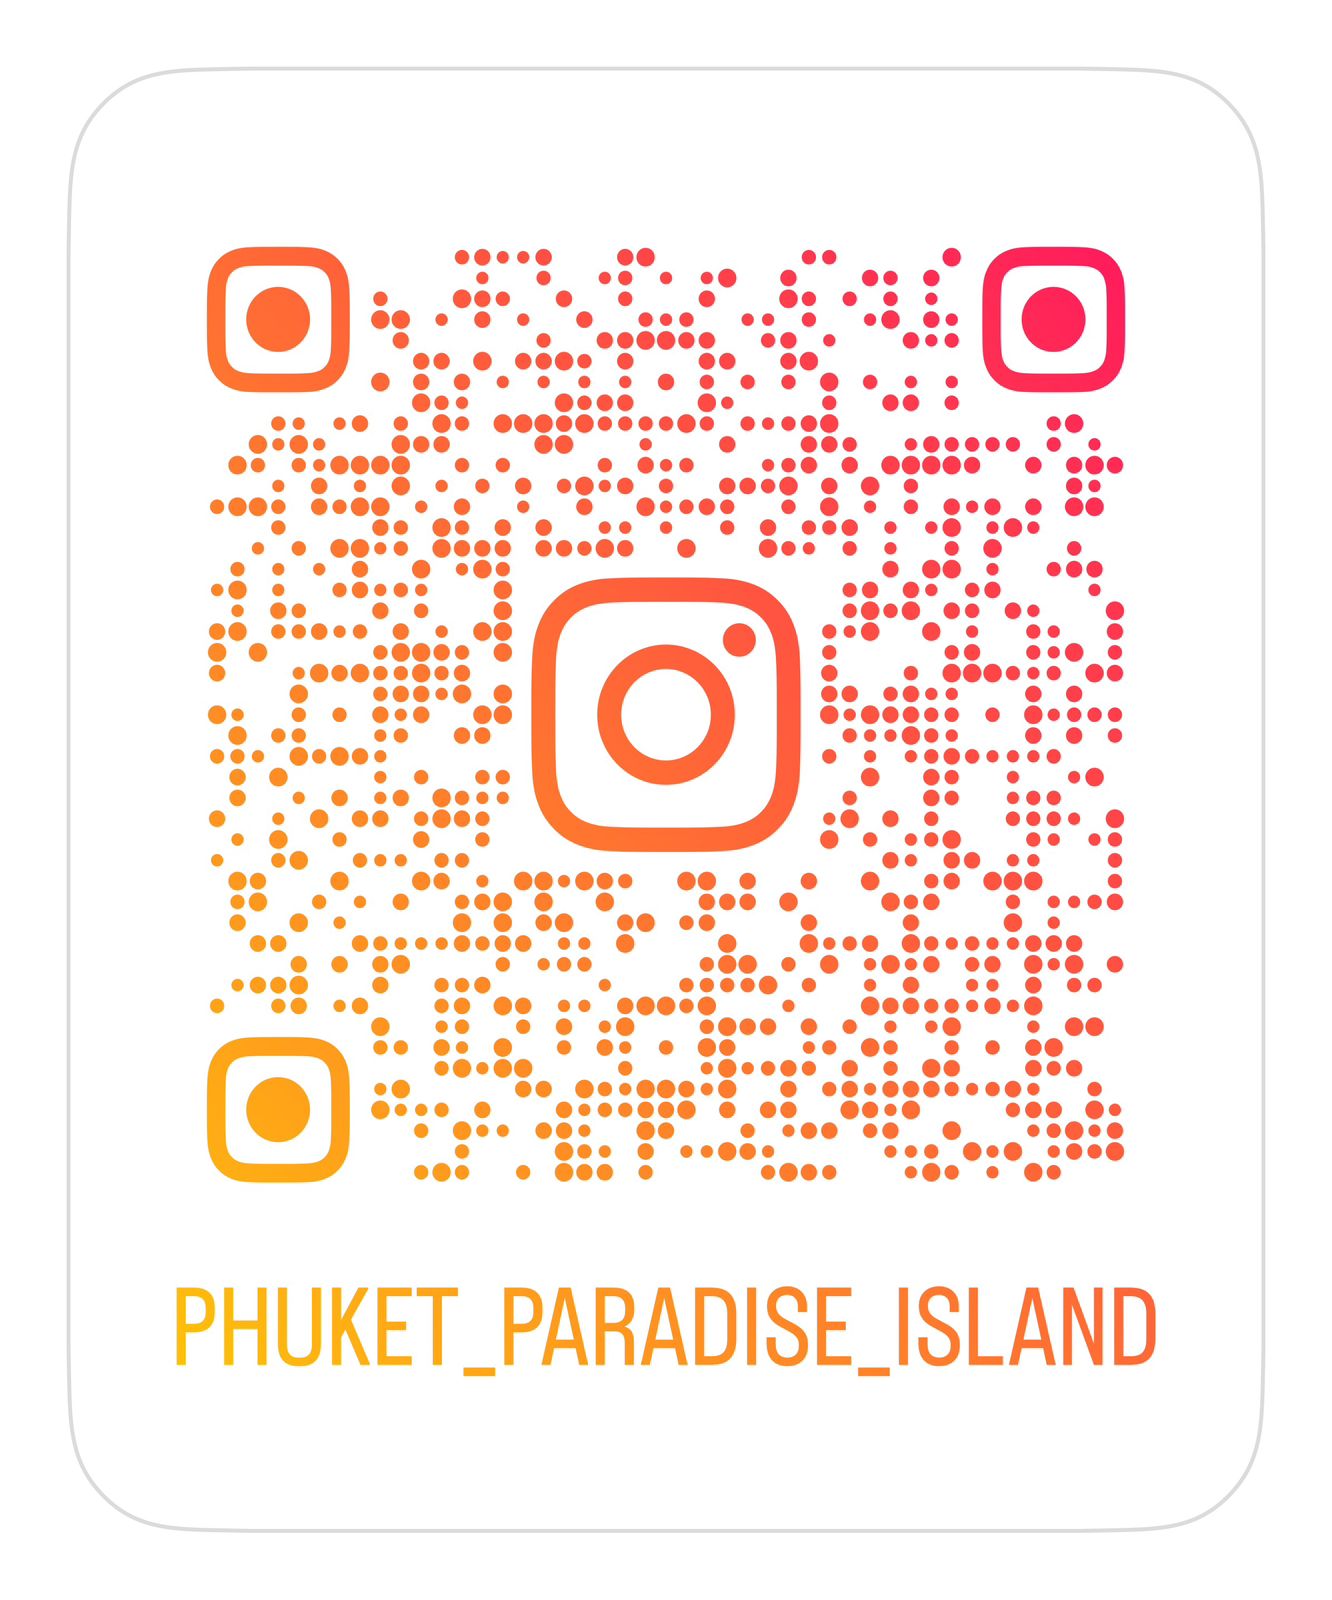 QR code Instagram - Get Your Phuket